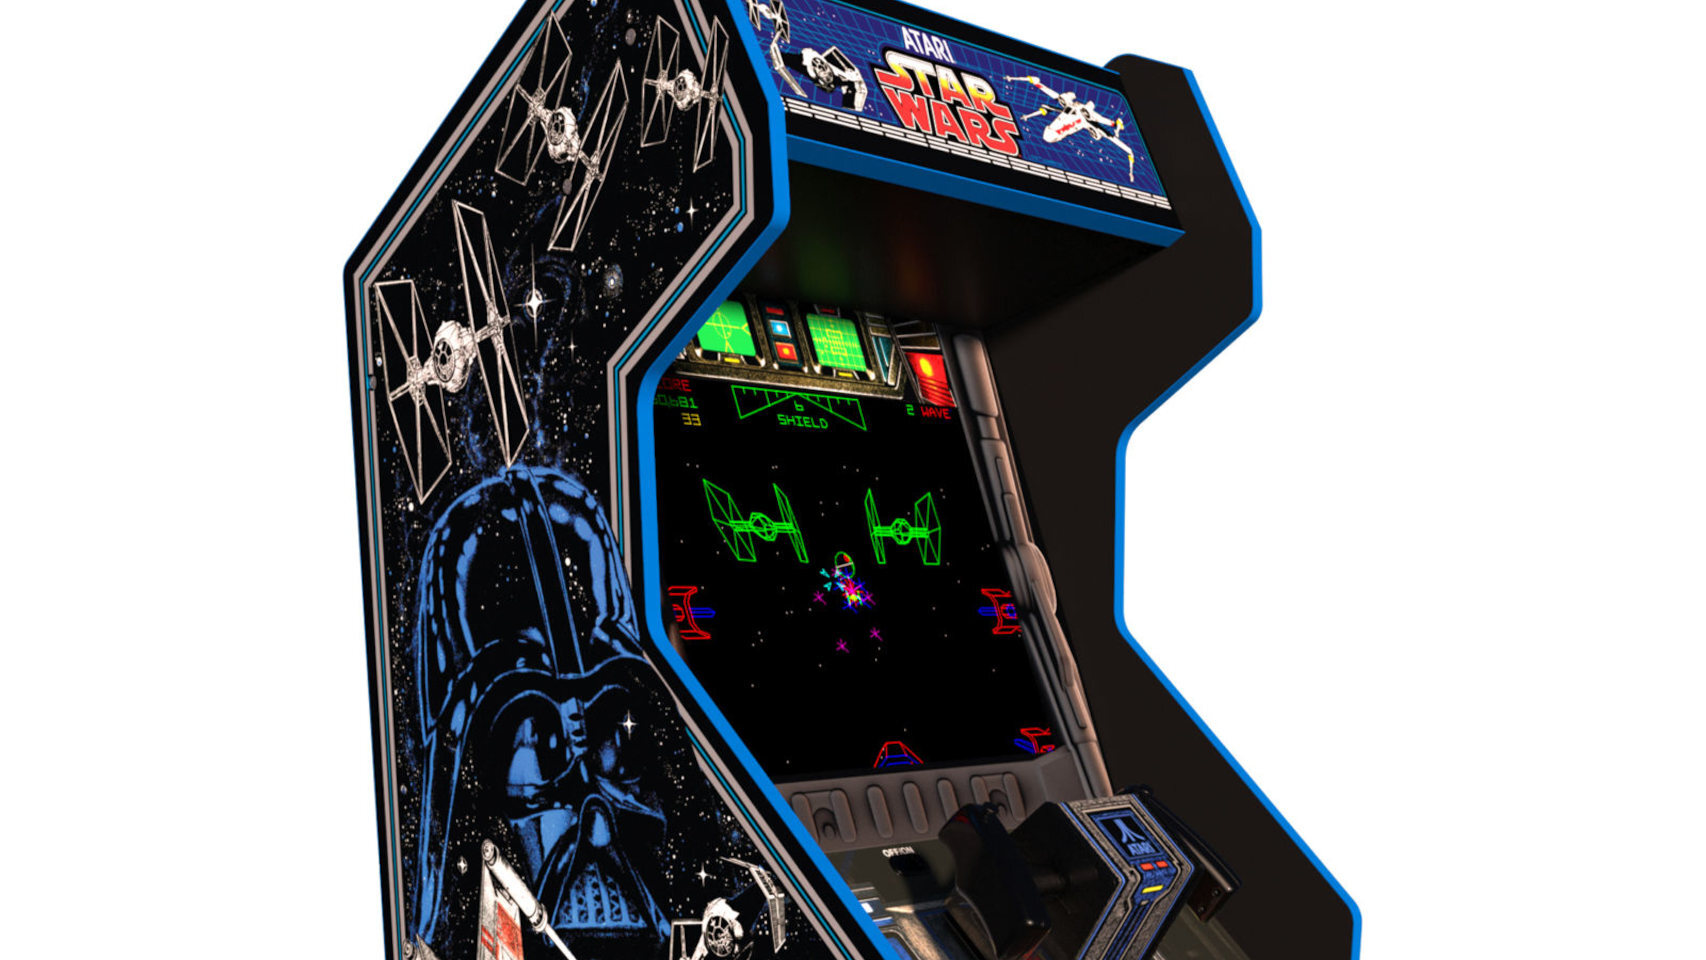 La recreativa original de Star Wars vuelve, delicia retro para tu sala de juegos